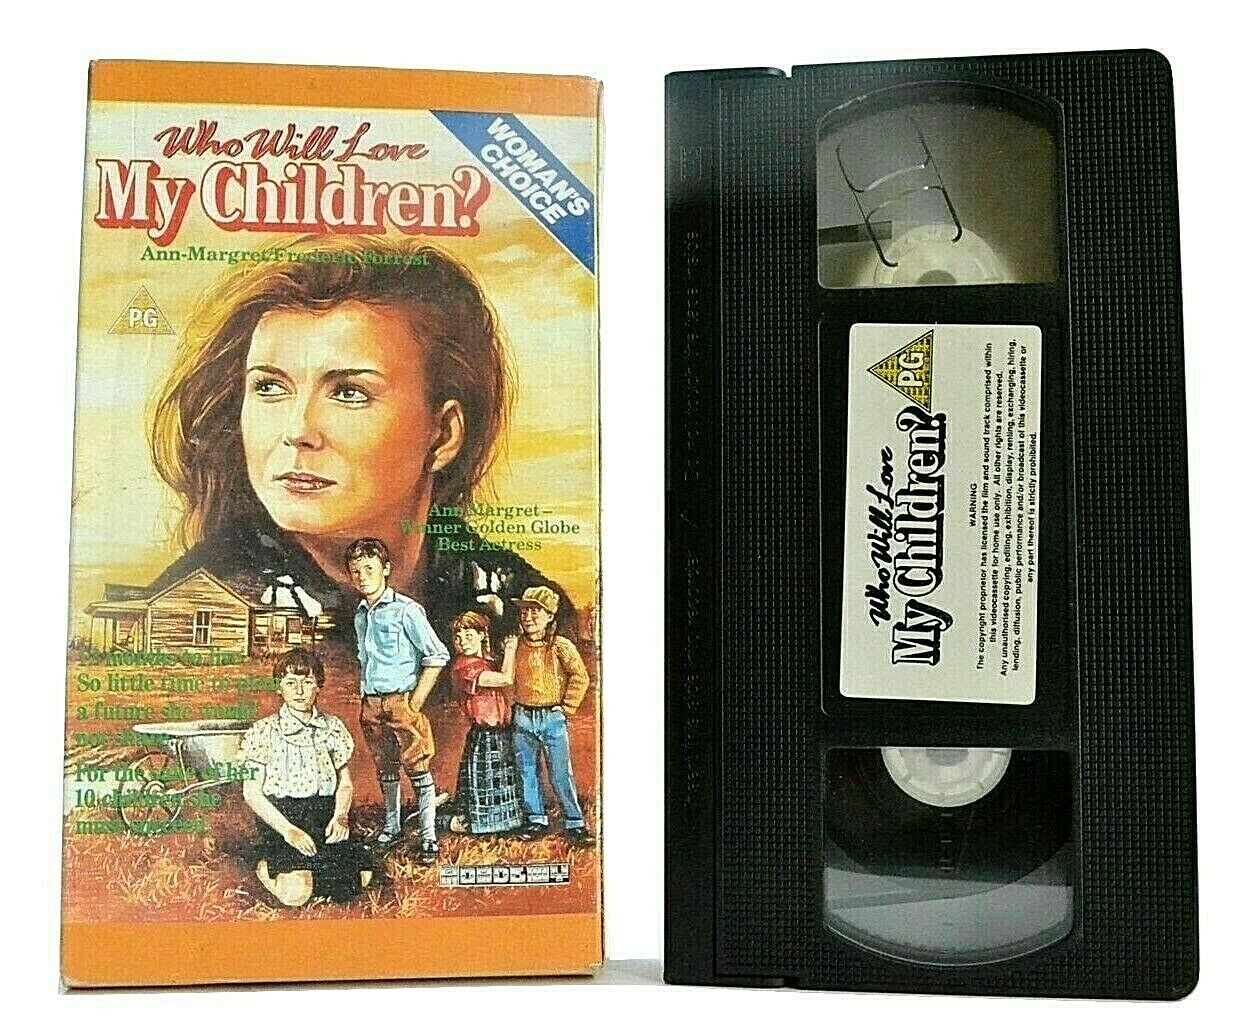 Who Will Love My Children (Academy) - Carton Box - Drama - Ann-Margaret - VHS-